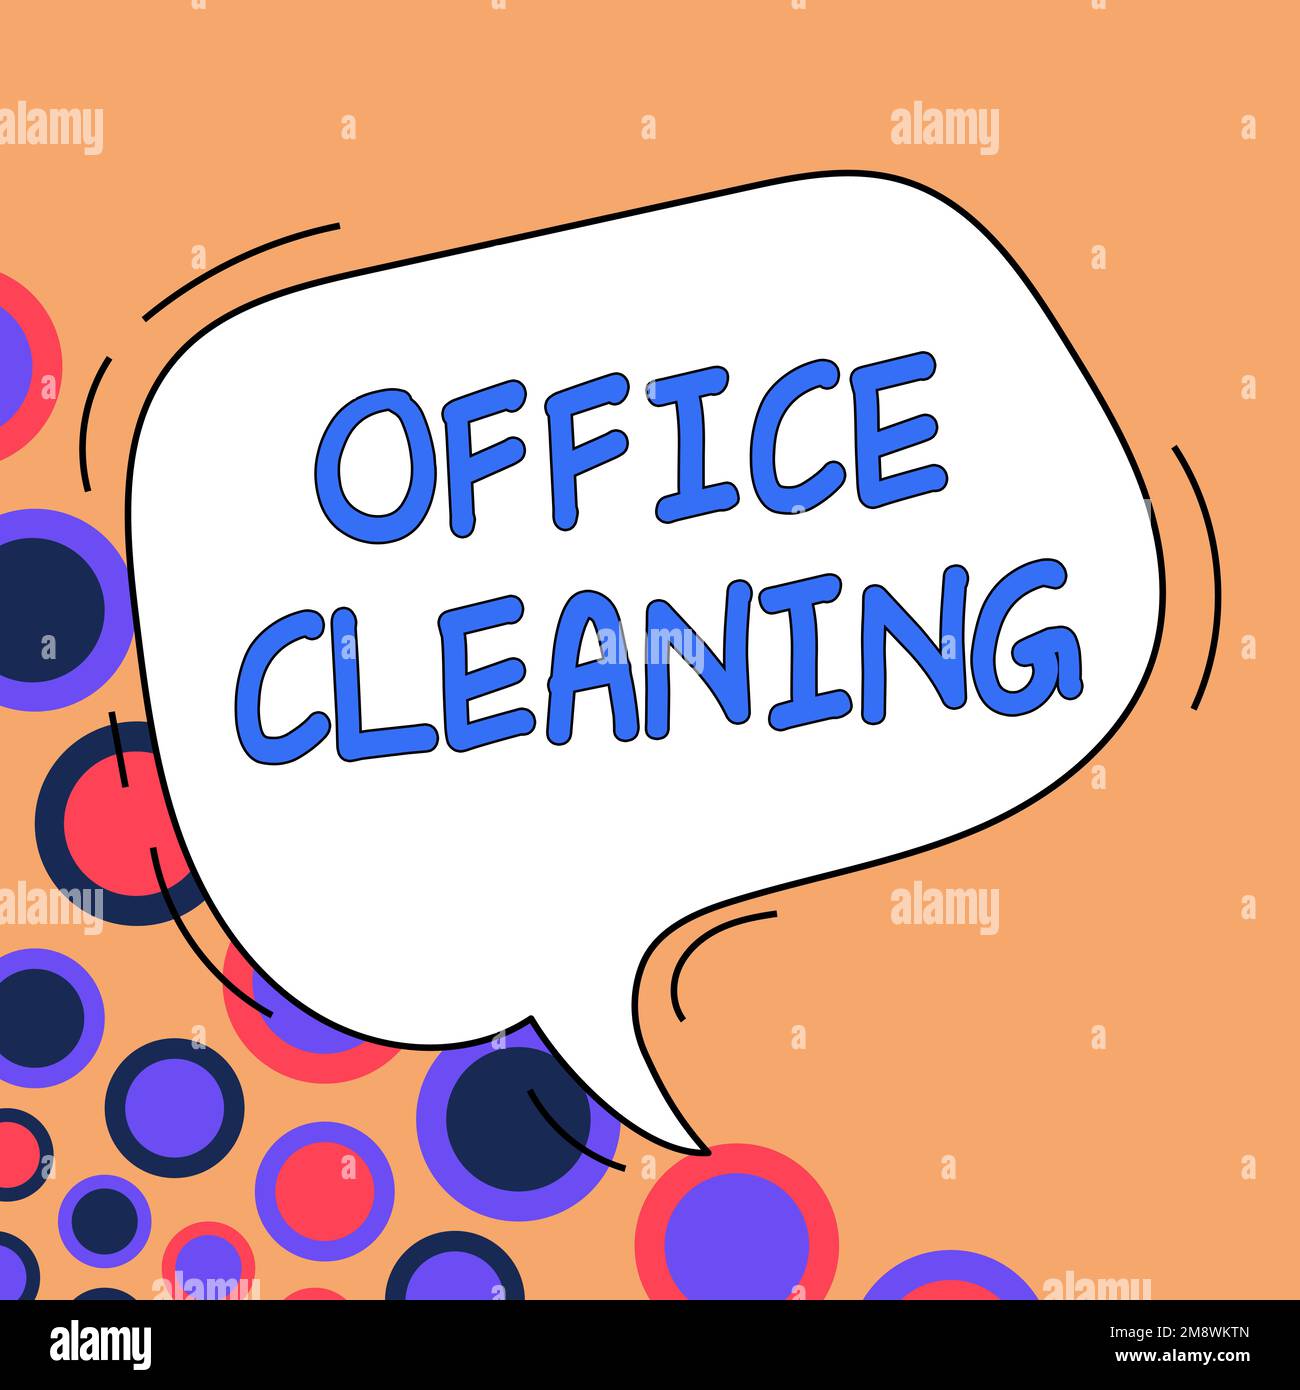 Texto de escritura a mano de Office Cleaning. Escaparate de negocios La  acción o el proceso de limpiar el interior del edificio de oficinas  Fotografía de stock - Alamy